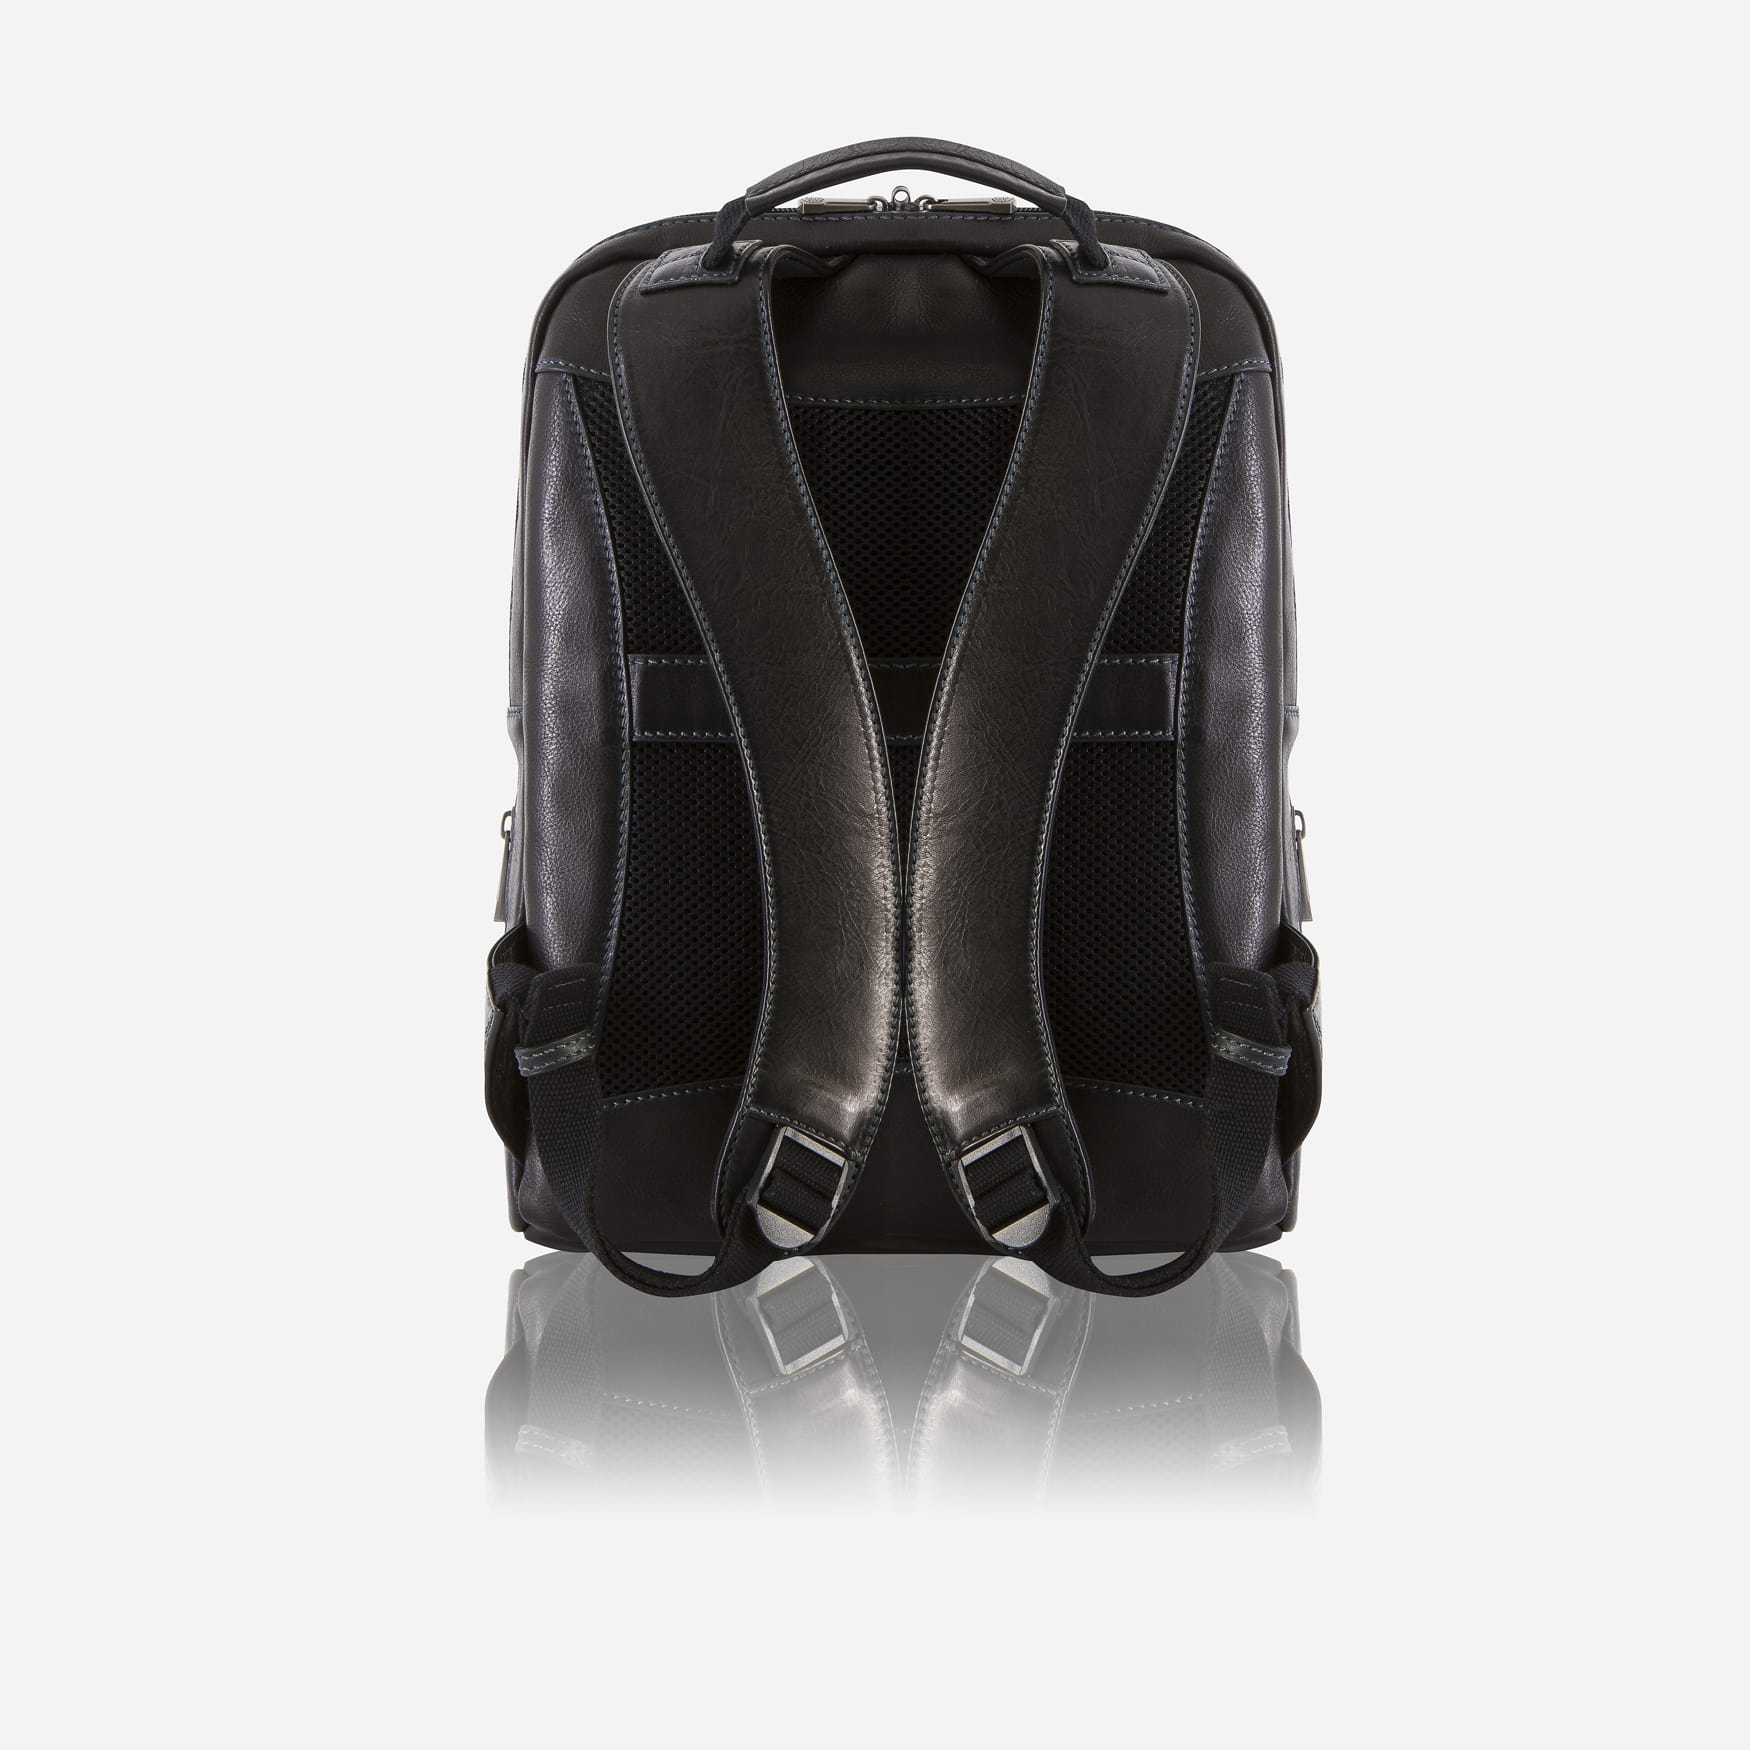 Medium Slim Laptop Backpack, Black